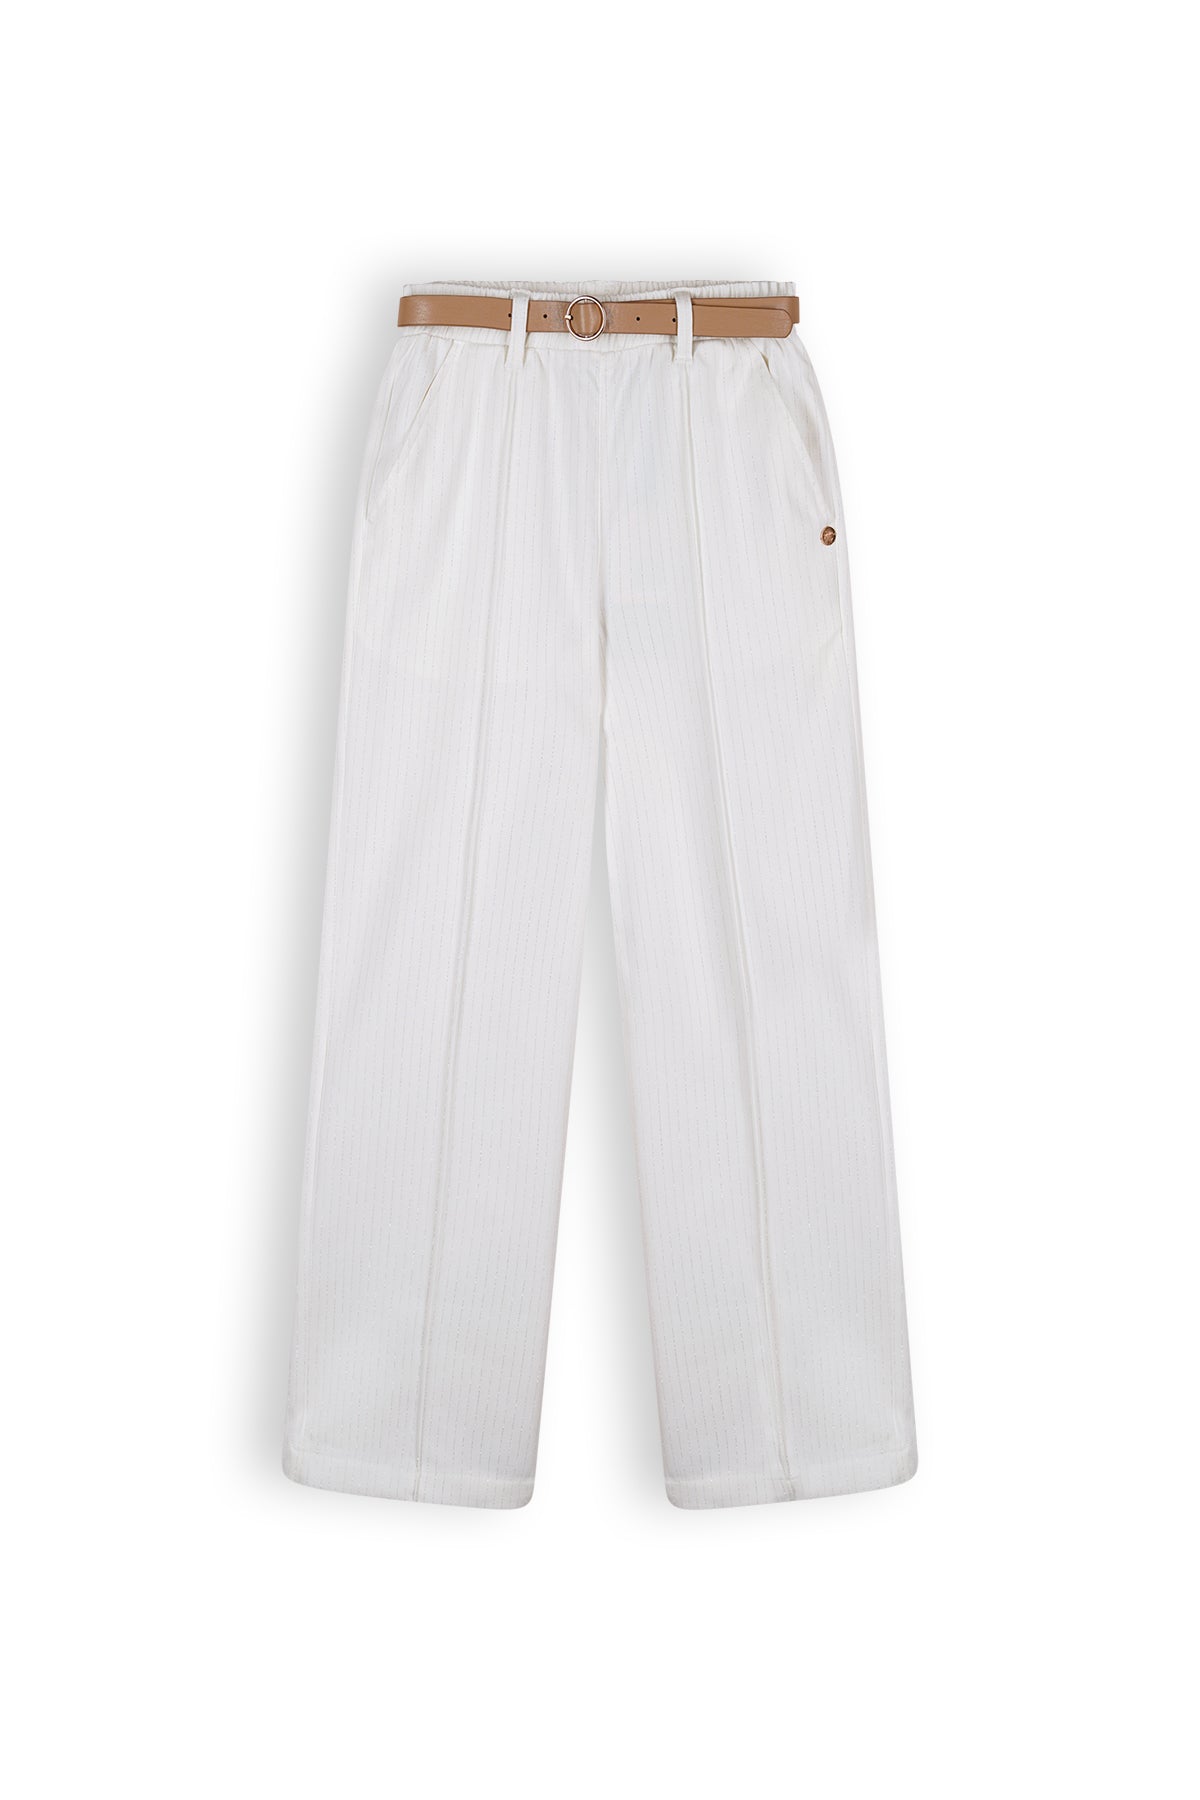 Meisjes Sayla Girls Wide Leg Pants Lurex Pinstripe White + Belt van NoNo in de kleur Snow White in maat 134-140.